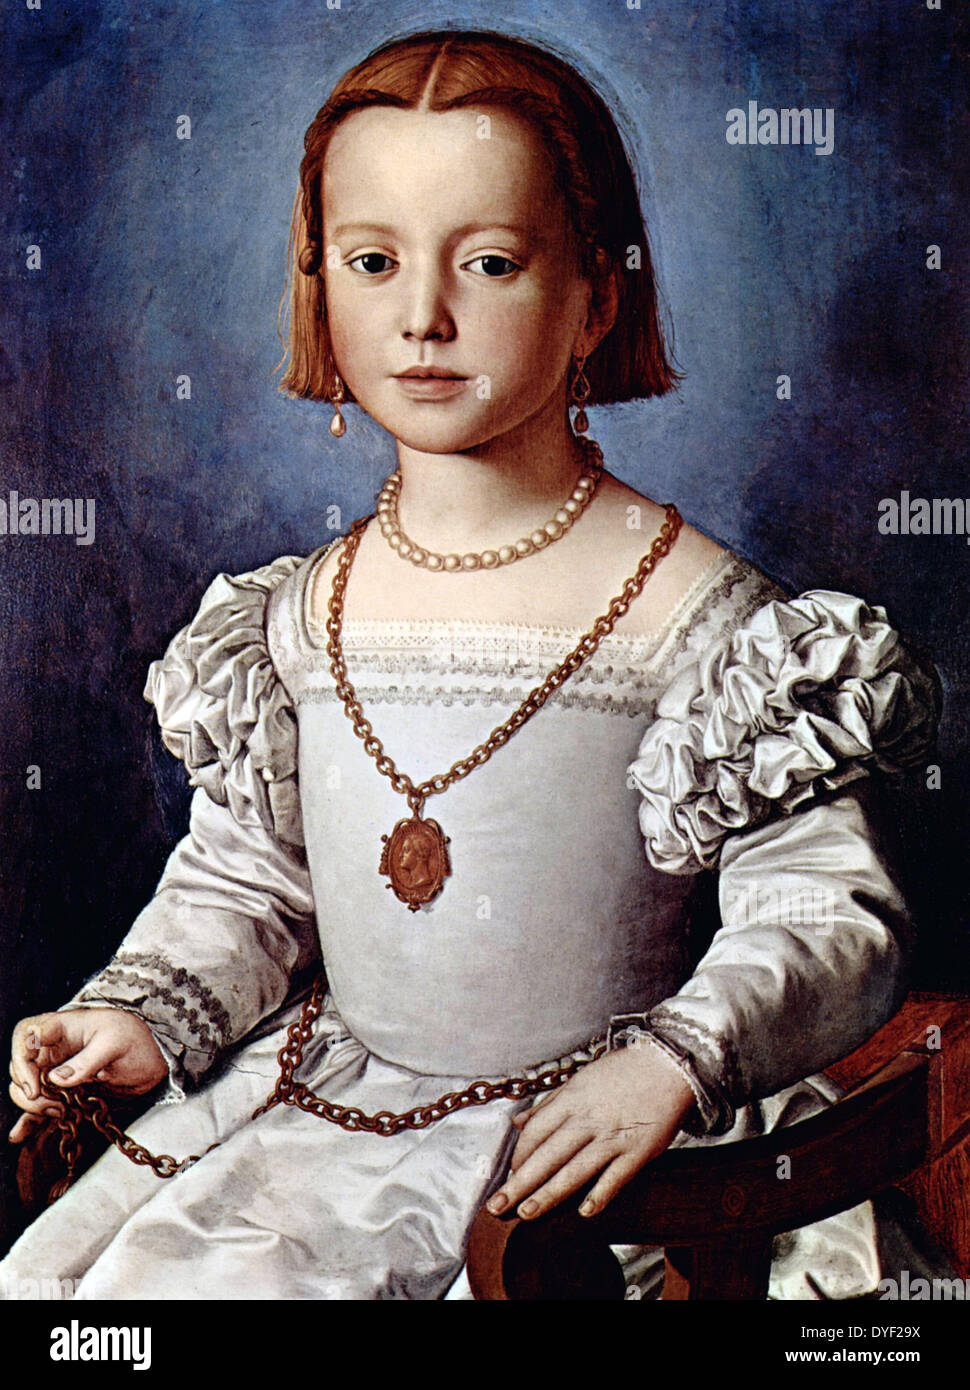 Bianca de Médicis par Agnolo di Cosimo Bronzino (1503 - 1572), Agnolo Bronzino est un peintre maniériste italien de Florence. Banque D'Images